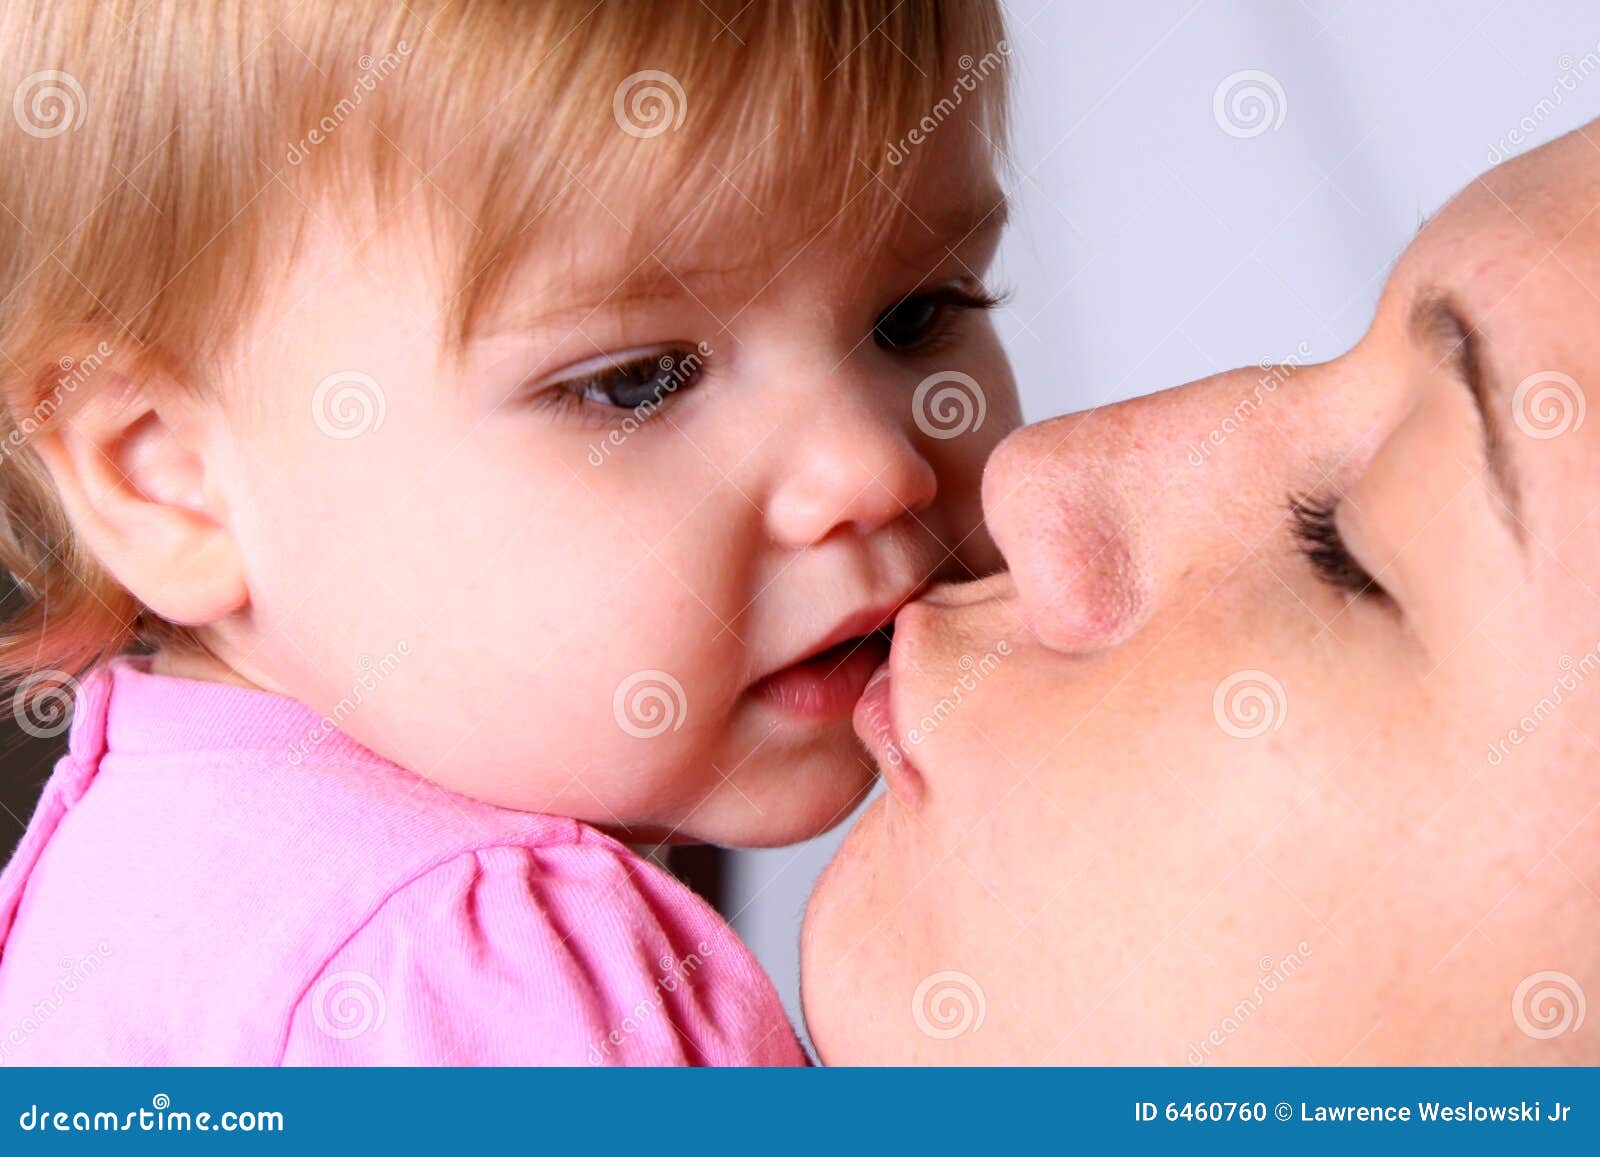 Лижут маме форум. Мама целует с языком ребенка. Мальчик целует маму с языком. Поцелуйчики для мамы. Девушка целует маму с языком.